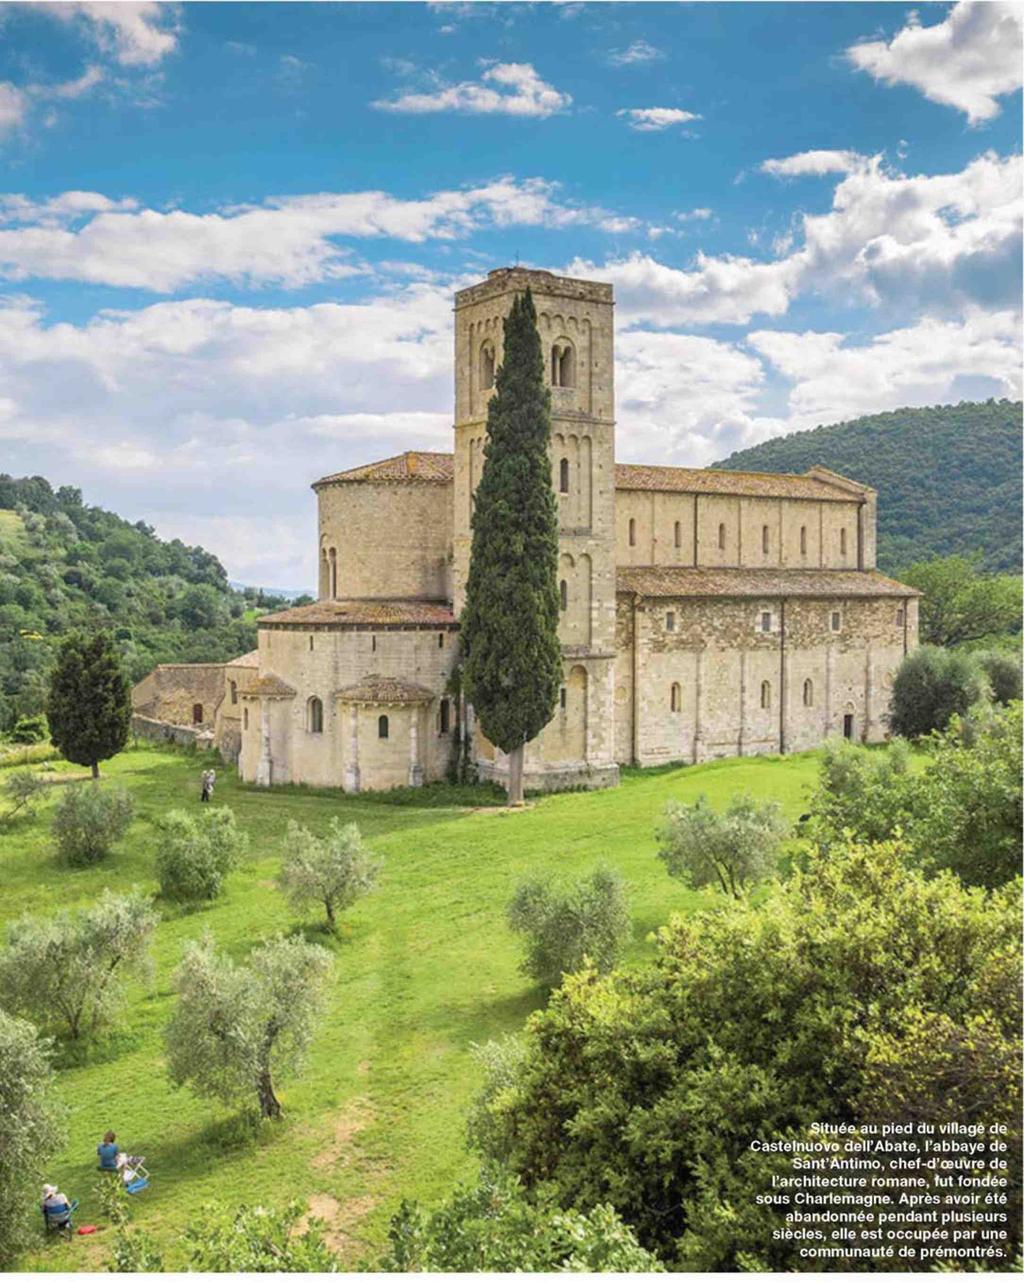 Située au pied du village de Casteinuovo dell'abate, l'abbaye de Sant'Antimo, chef-d'œuvre de l'architecture romane, fut